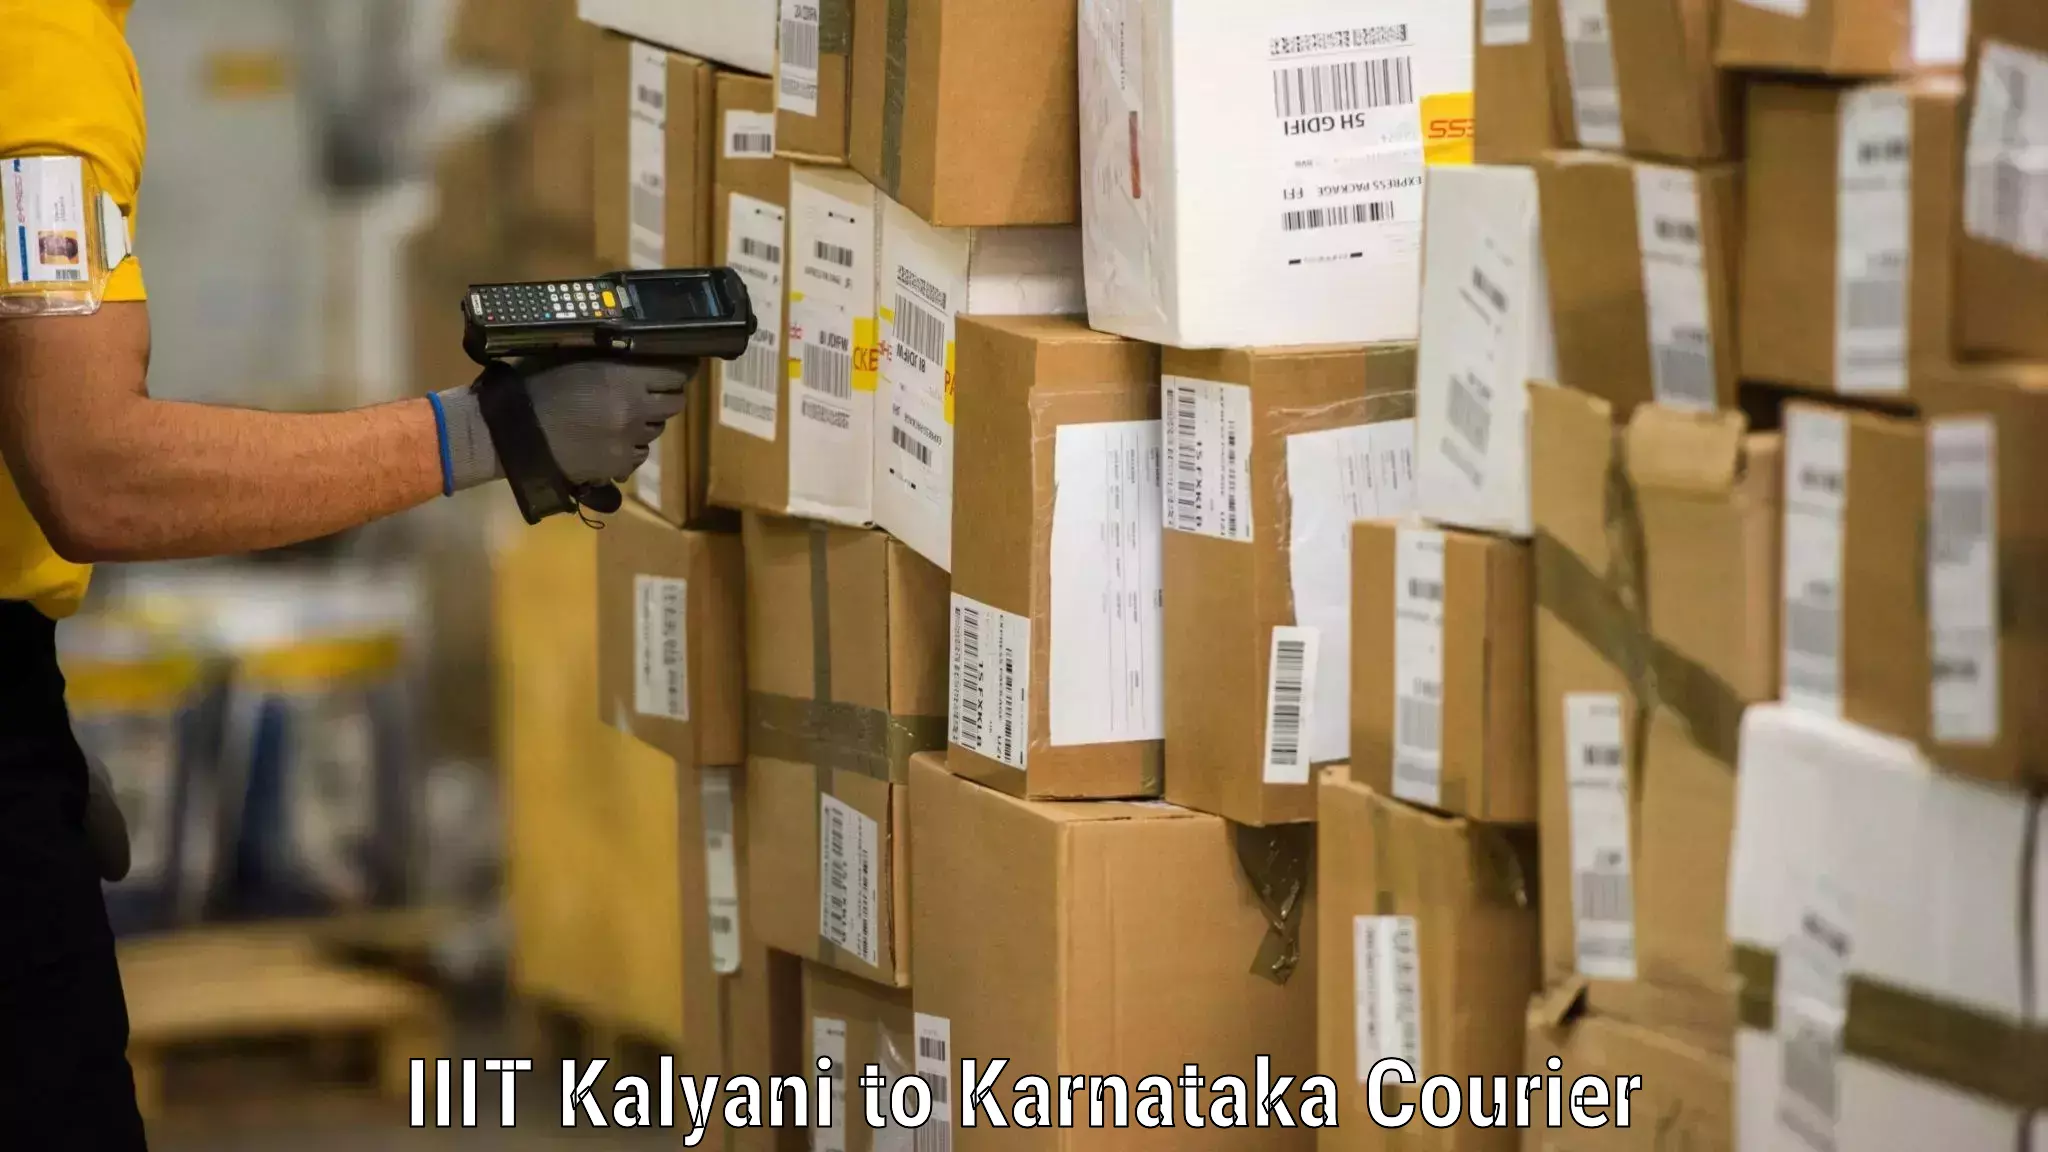 Professional movers IIIT Kalyani to Karnataka